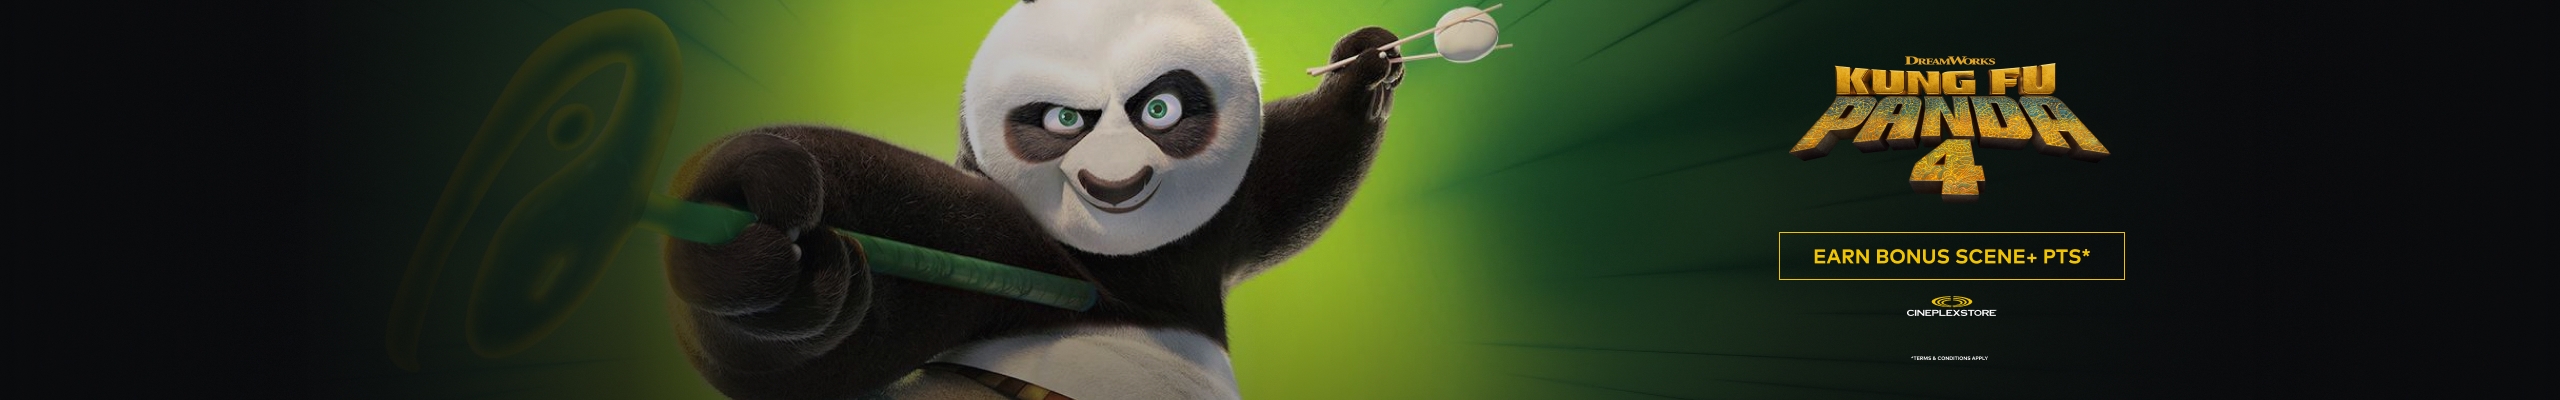 STORE: Kung Fu Panda 4 Bonus Offer